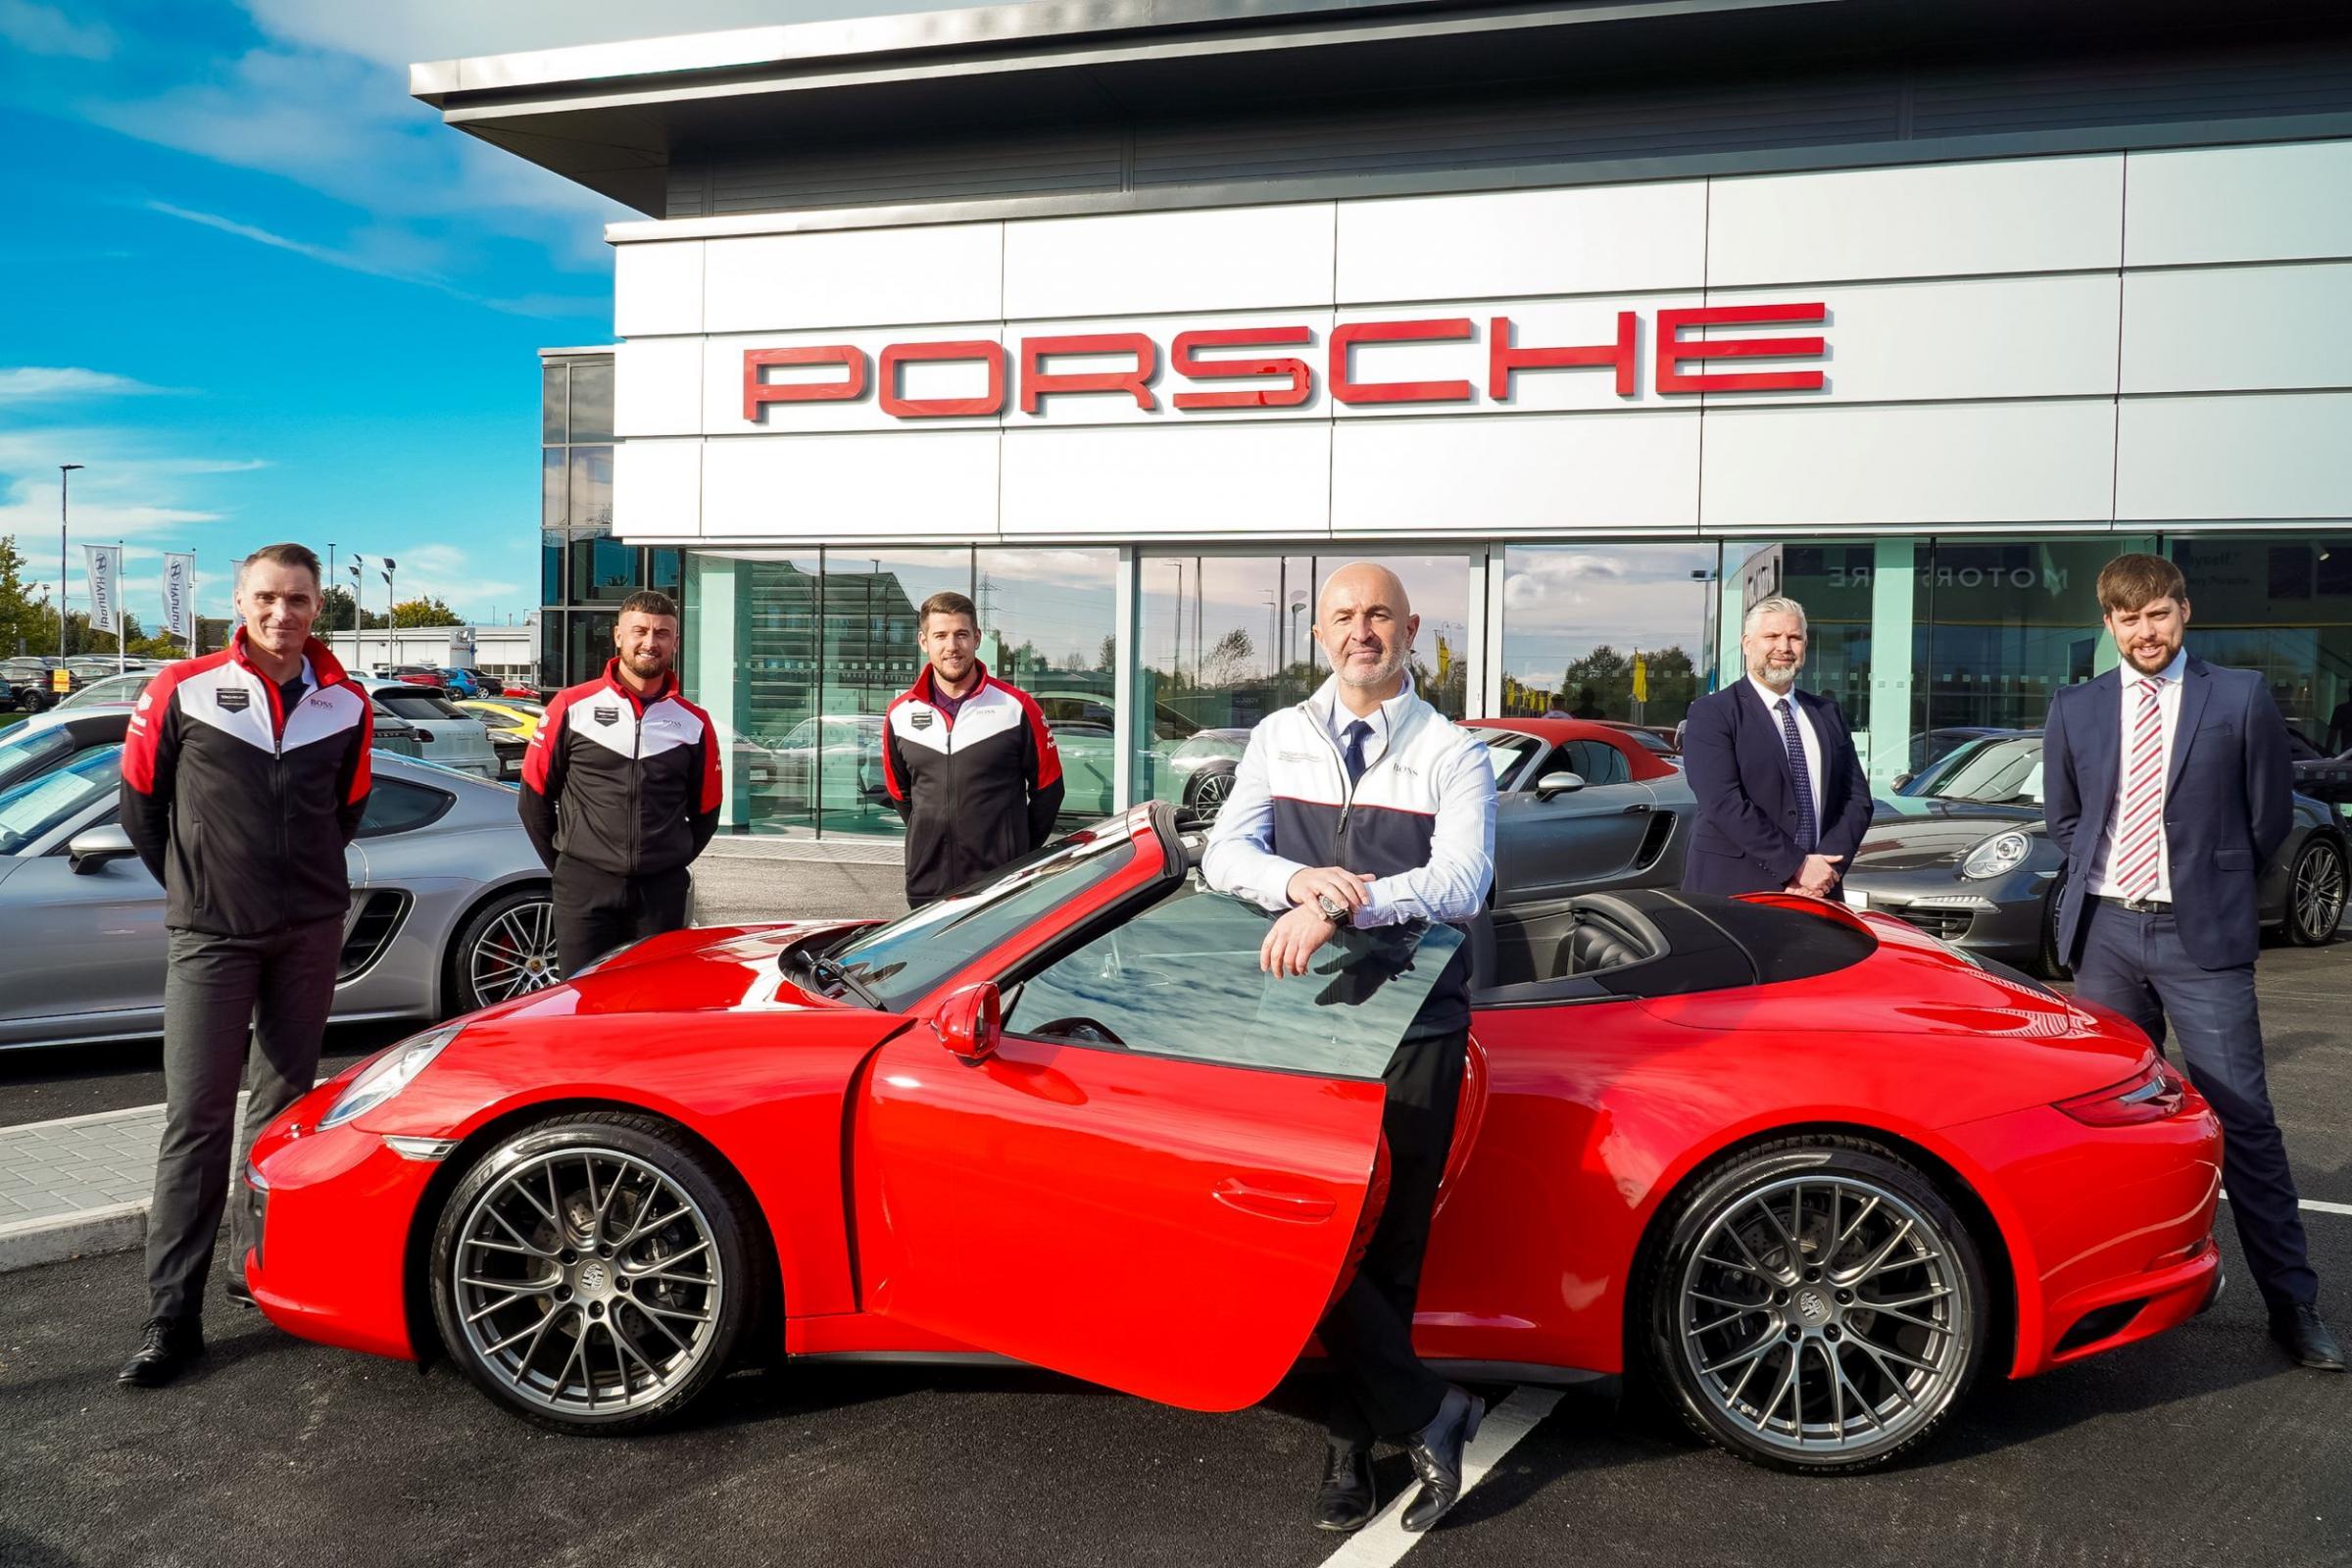 New Porsche Centre opens its doors in York